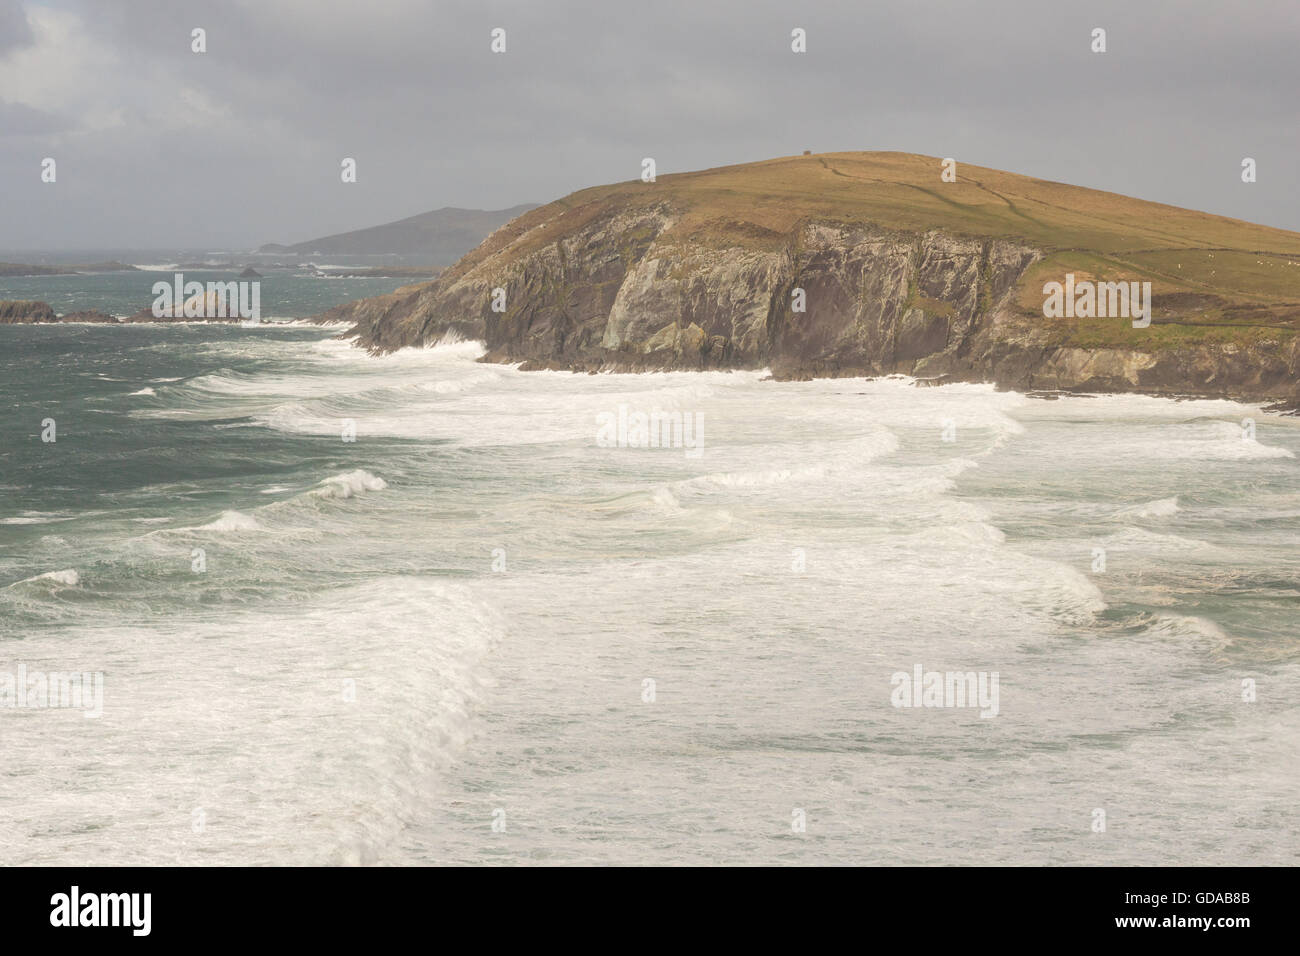 L'Irlande, Kerry, comté de Kerry, l'Anneau du Kerry, sur la côte, de fortes vagues sur la côte de l'anneau de Kerry Banque D'Images